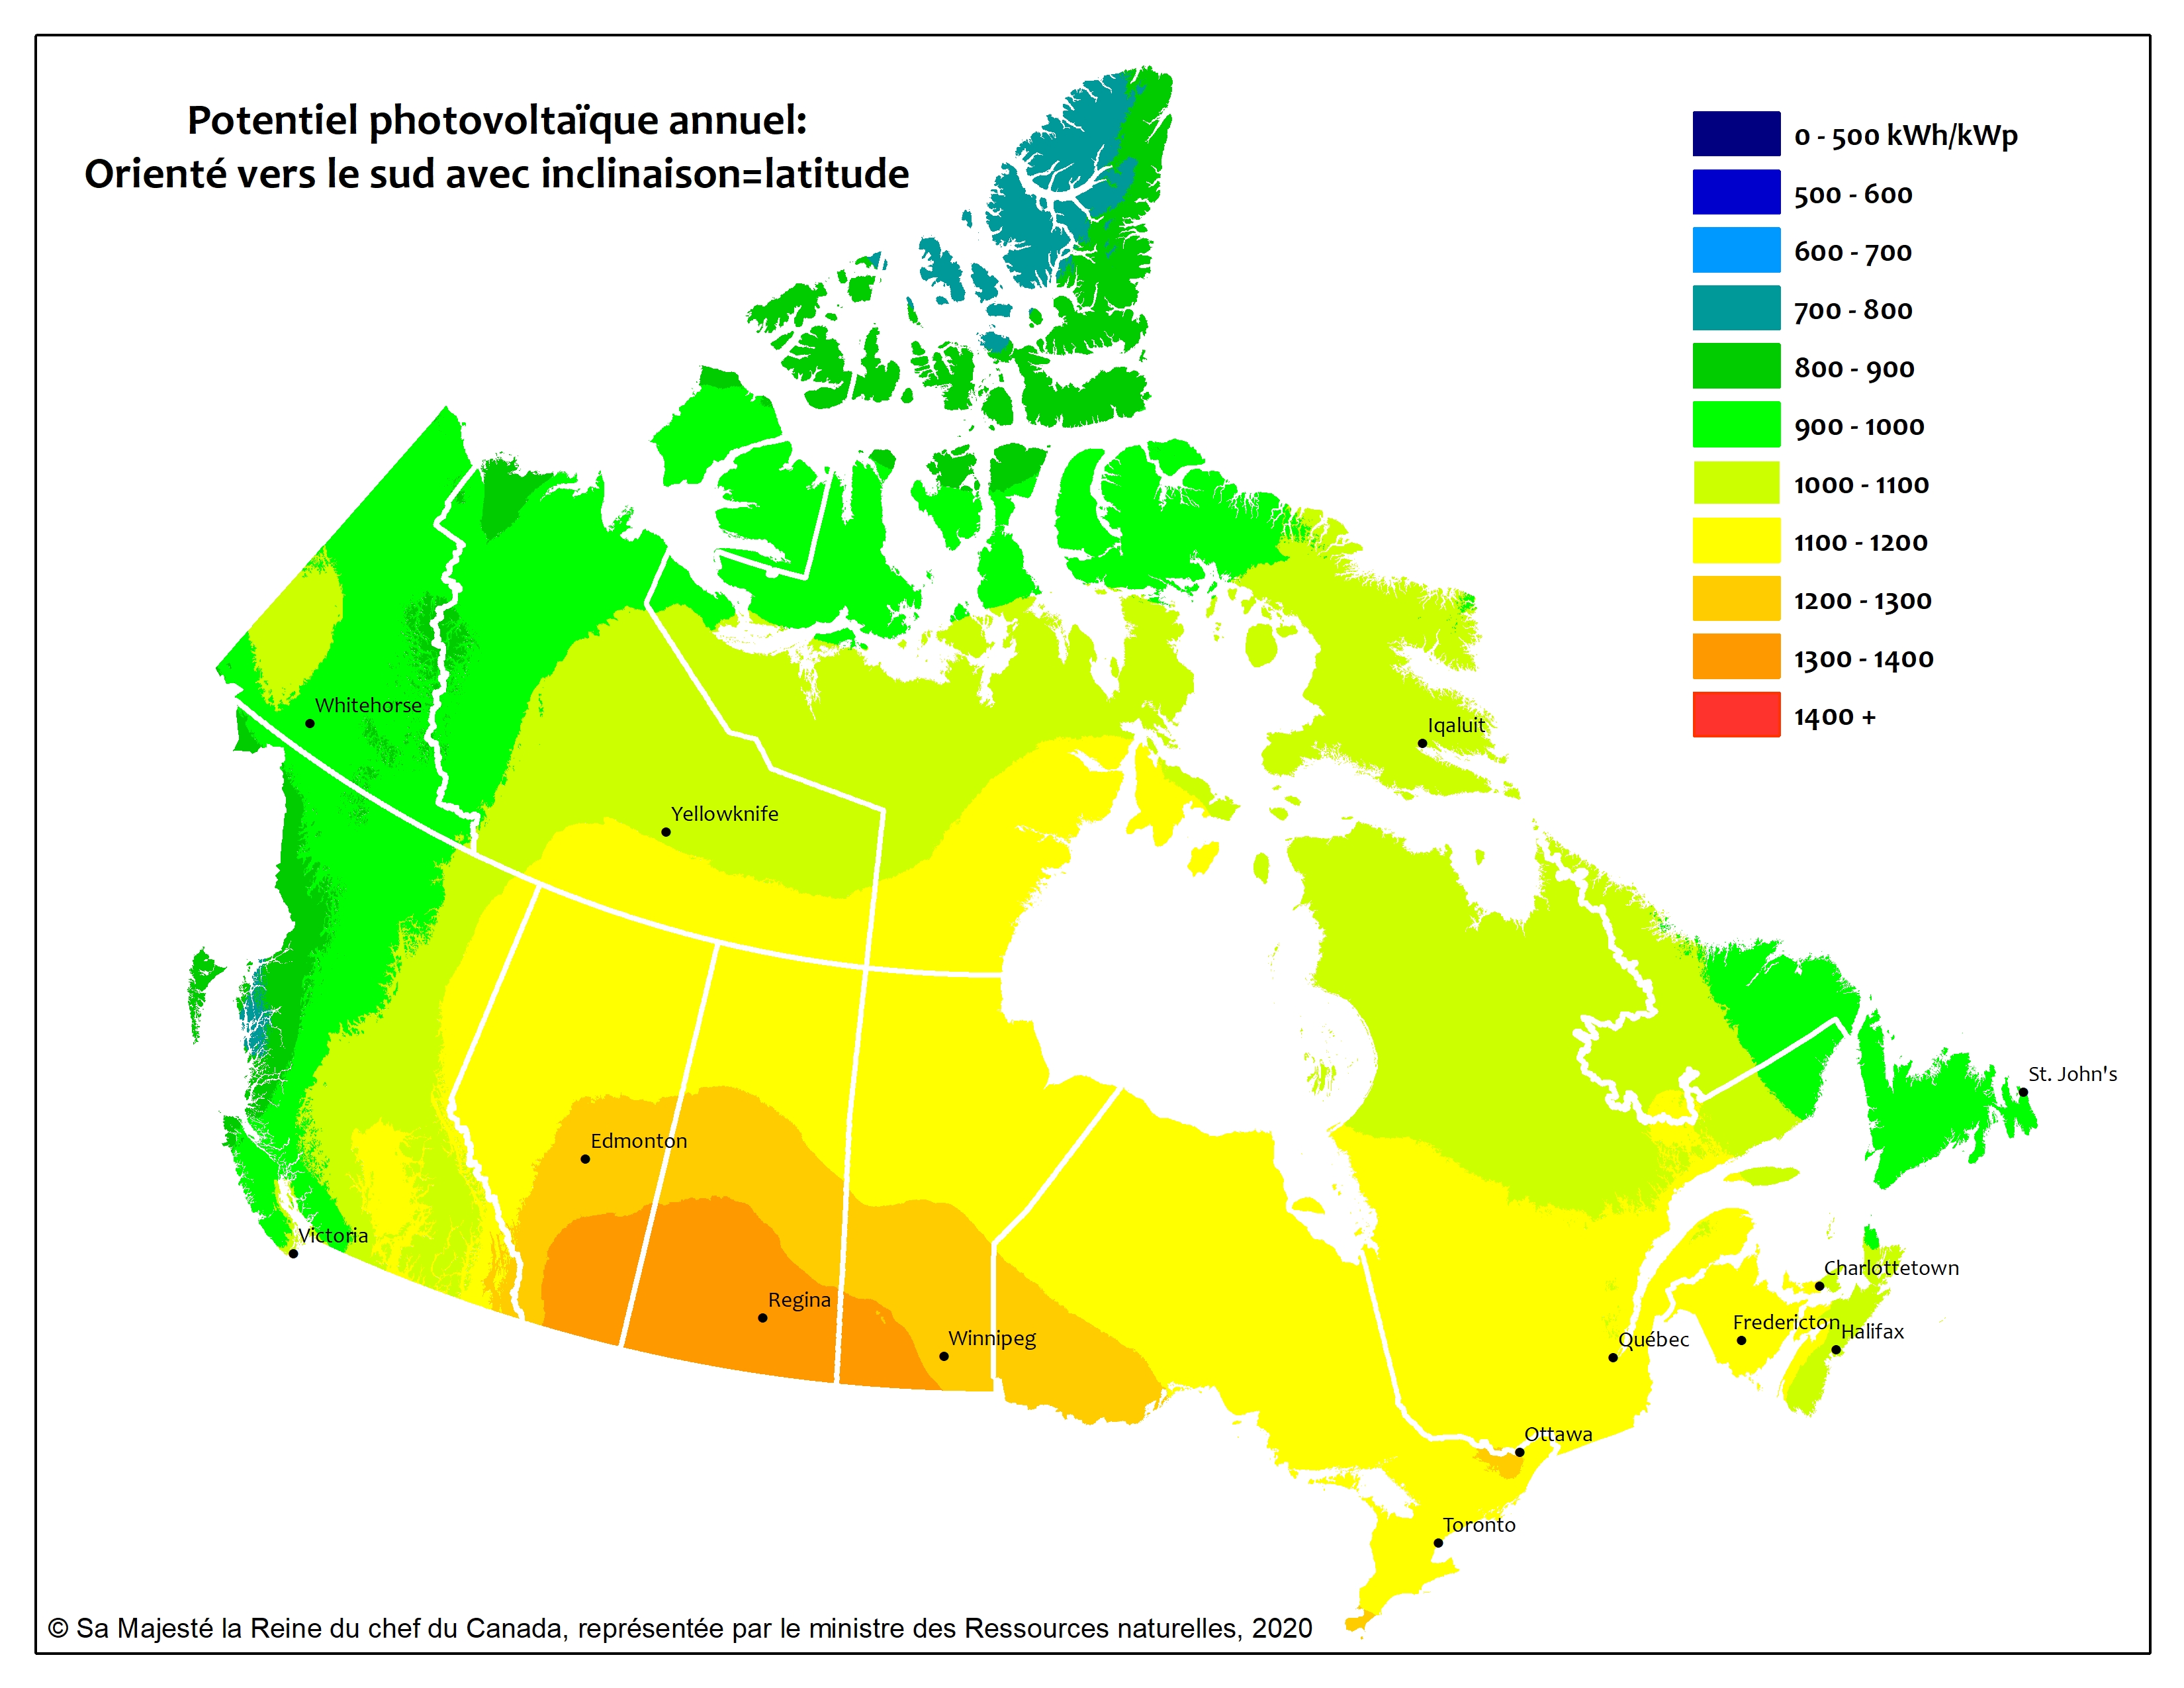  L'image montre une carte du Canada avec différentes zones du pays ombrées en vert, vert pâle, jaune, orange et orange foncé, selon le potentiel photovoltaïque annuel pour ces régions.